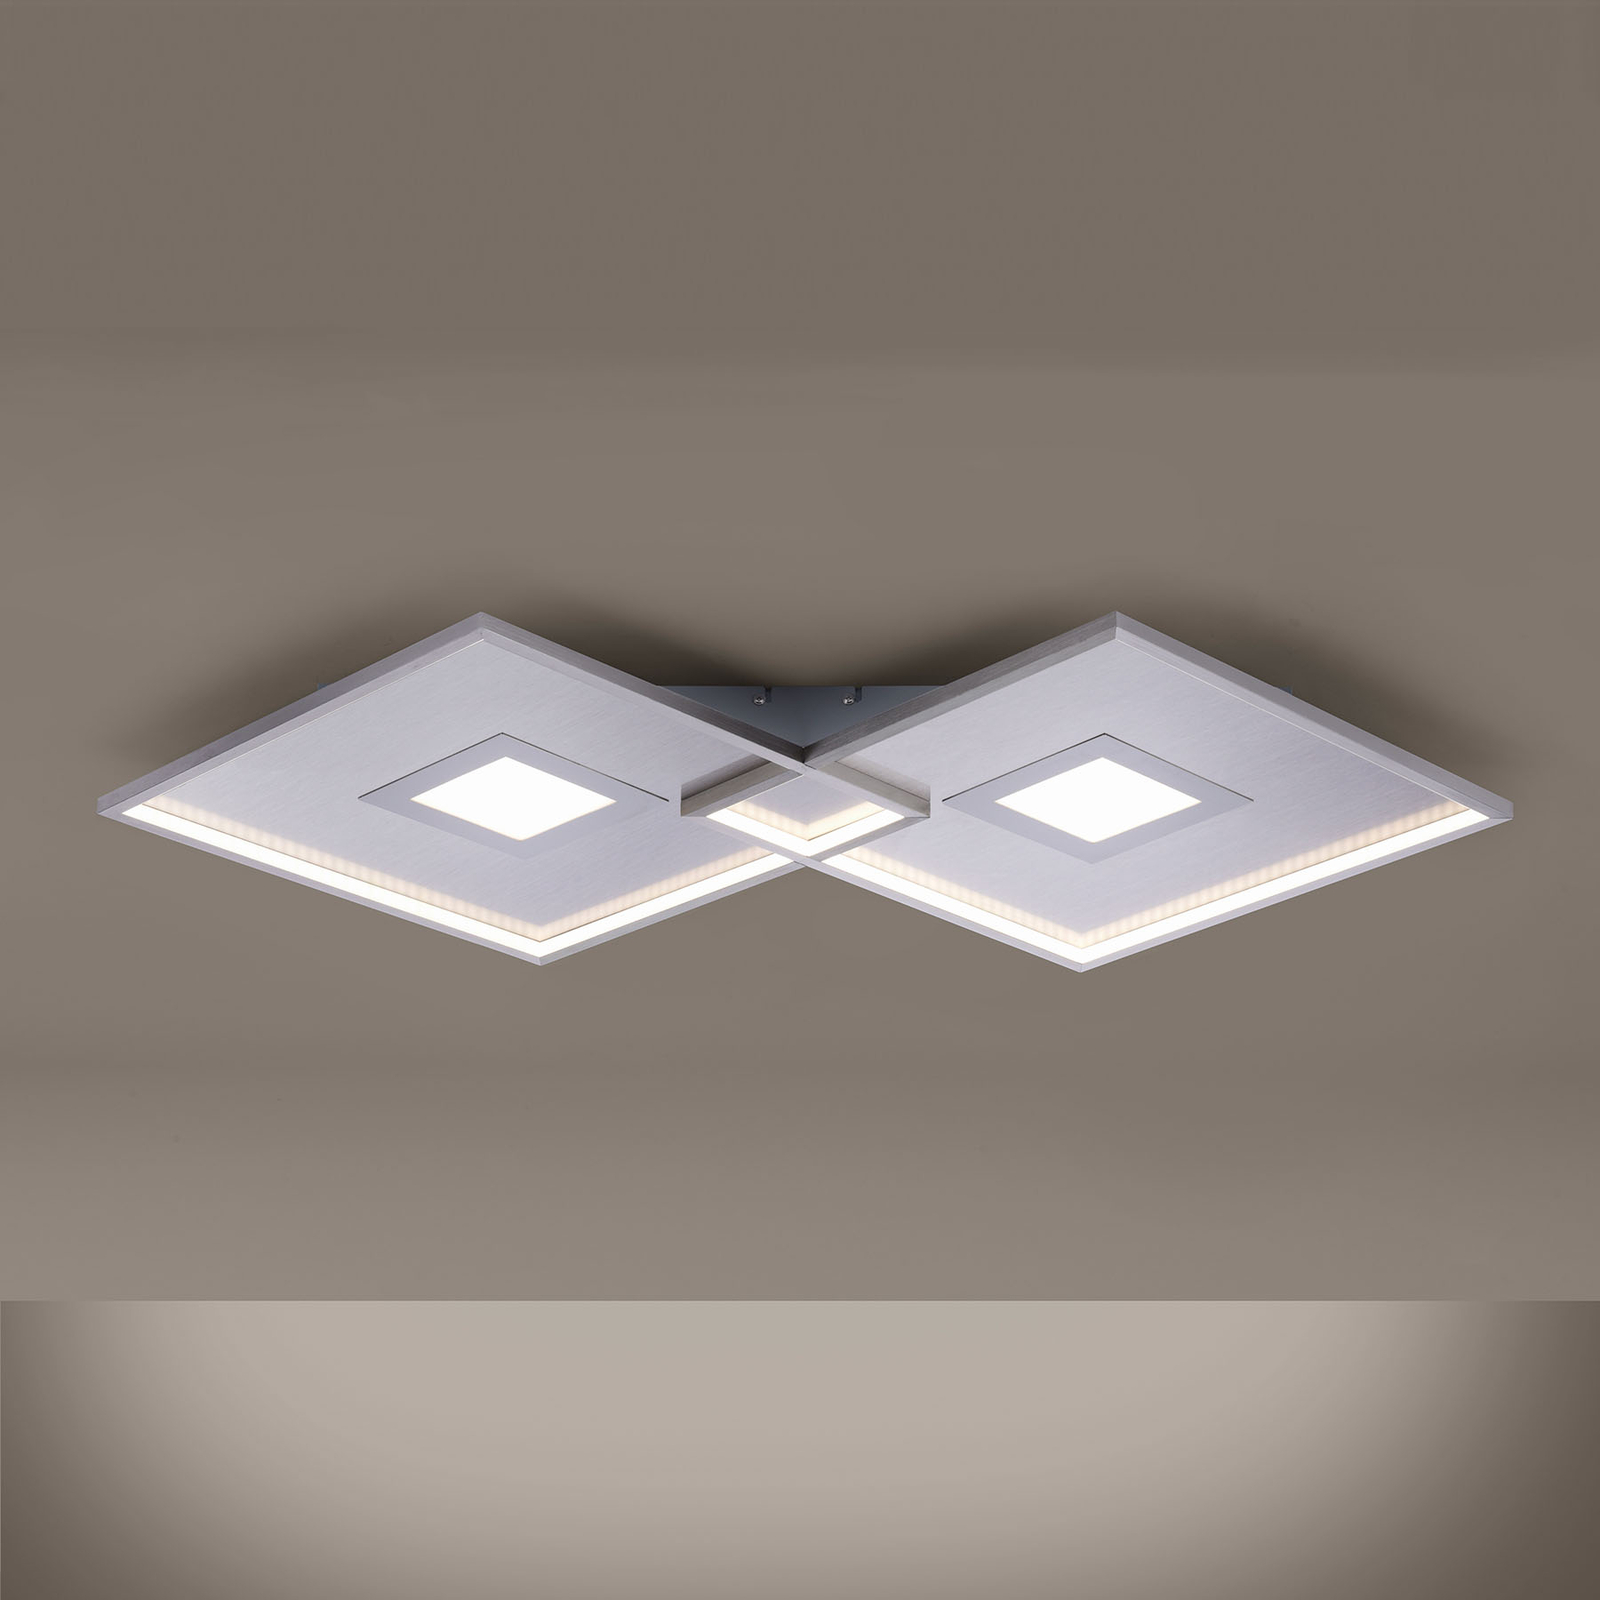 LED-kattovalaisin Amara, kaksi neliötä, hopea